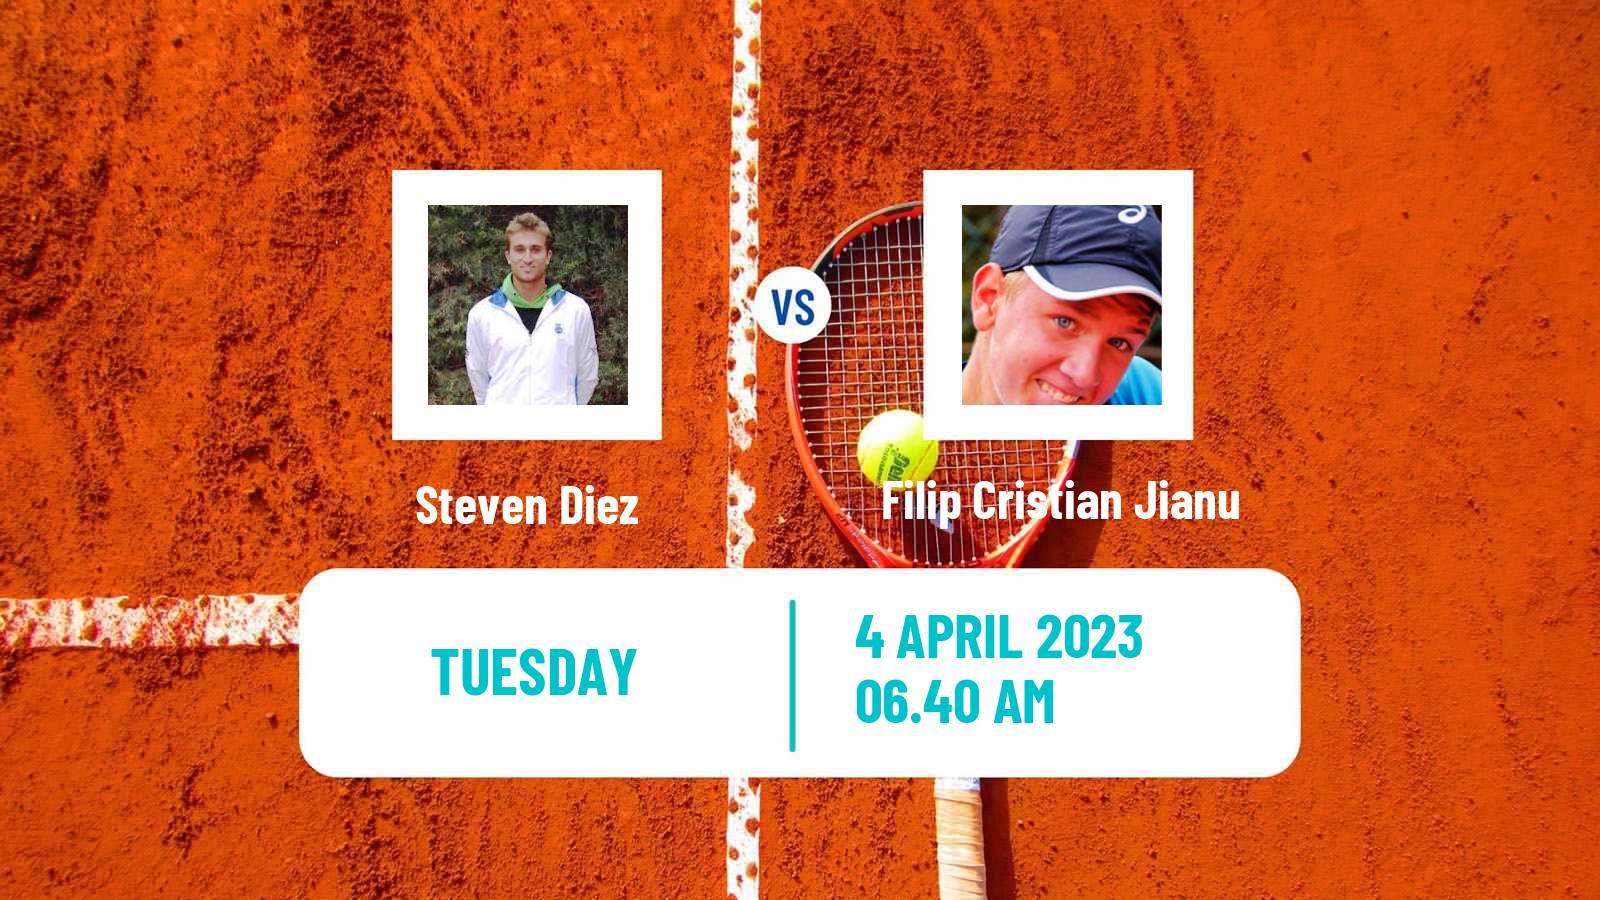 Tennis ATP Challenger Steven Diez - Filip Cristian Jianu